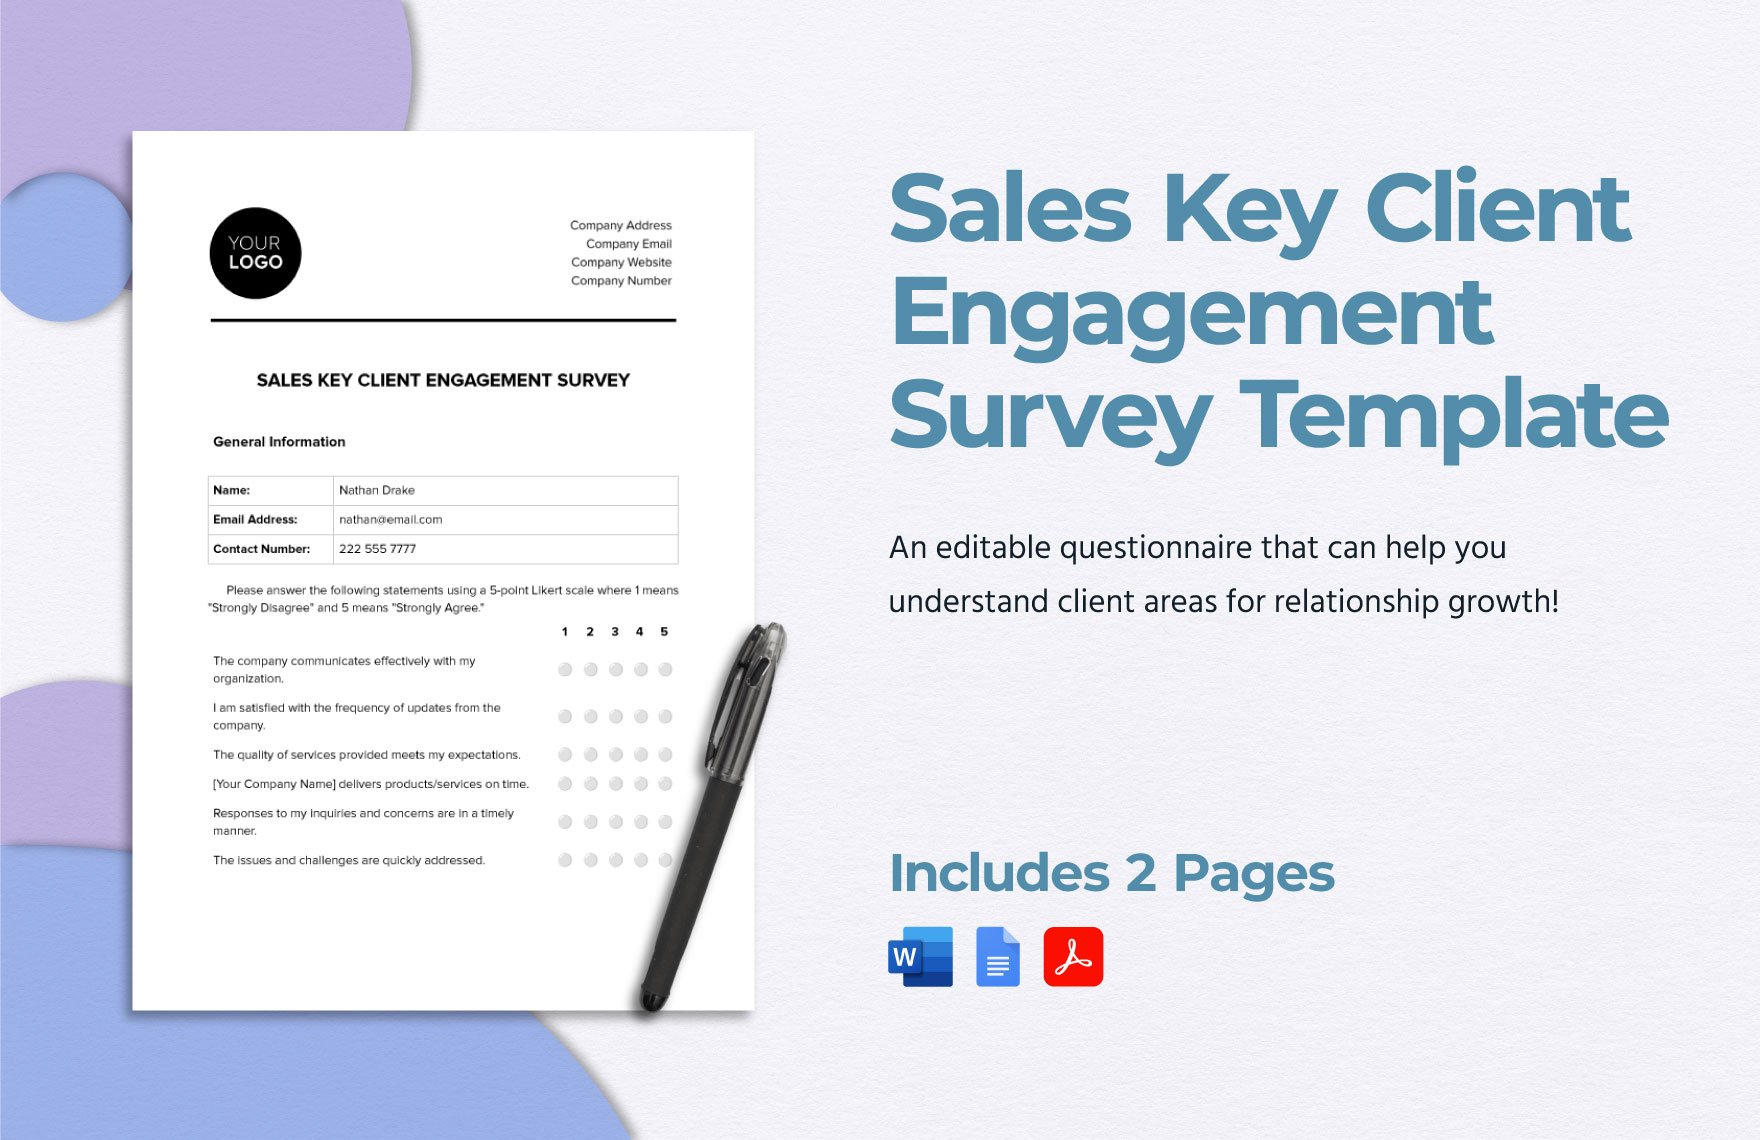 Sales Key Client Engagement Survey Template